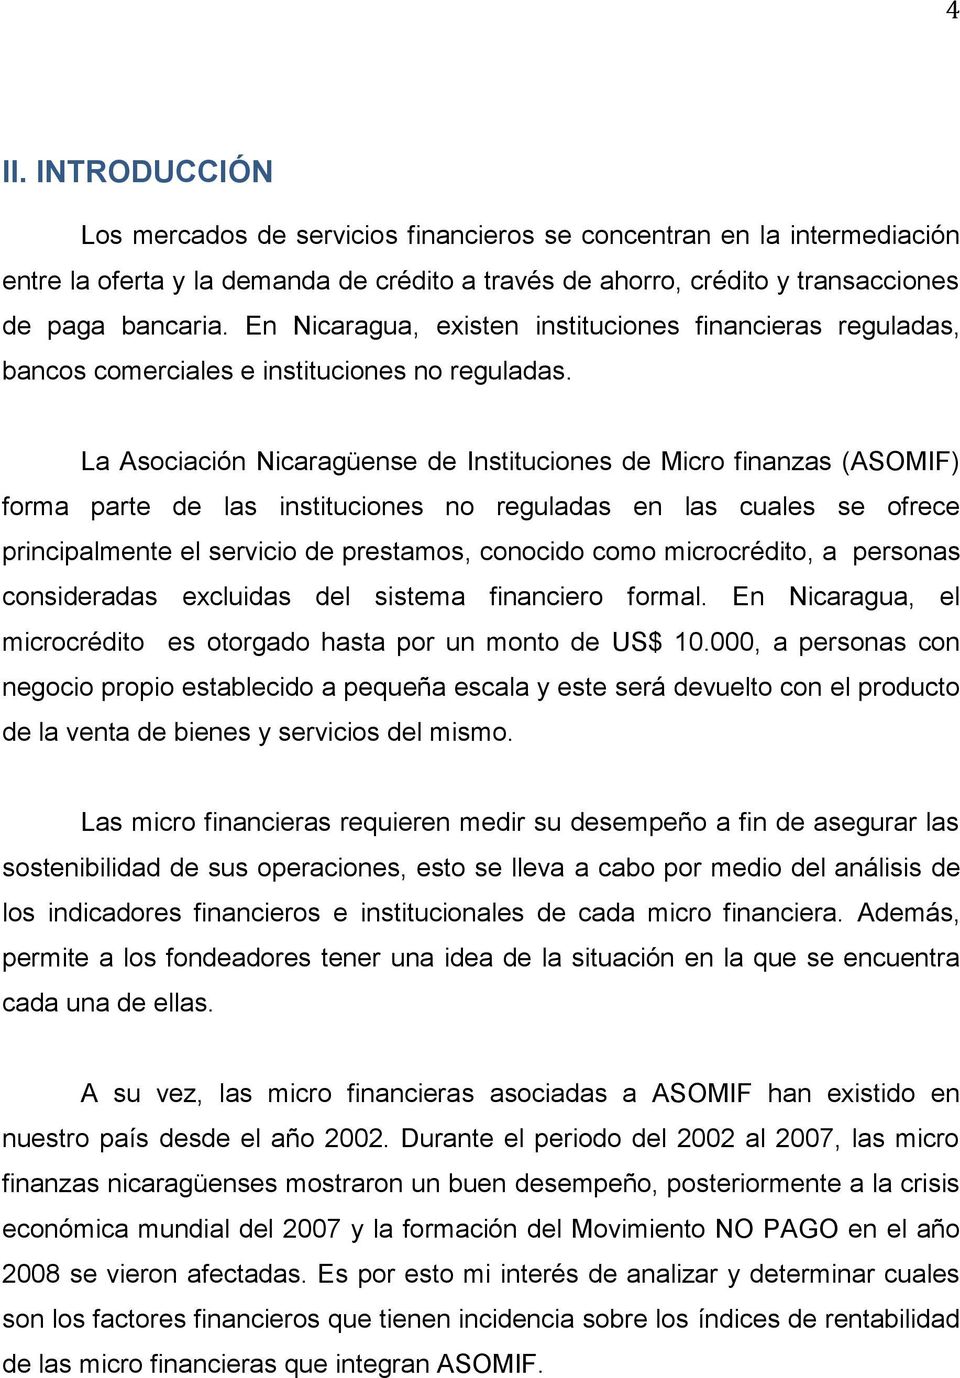 La Asociación Nicaragüense de Instituciones de Micro finanzas (ASOMIF) forma parte de las instituciones no reguladas en las cuales se ofrece principalmente el servicio de prestamos, conocido como